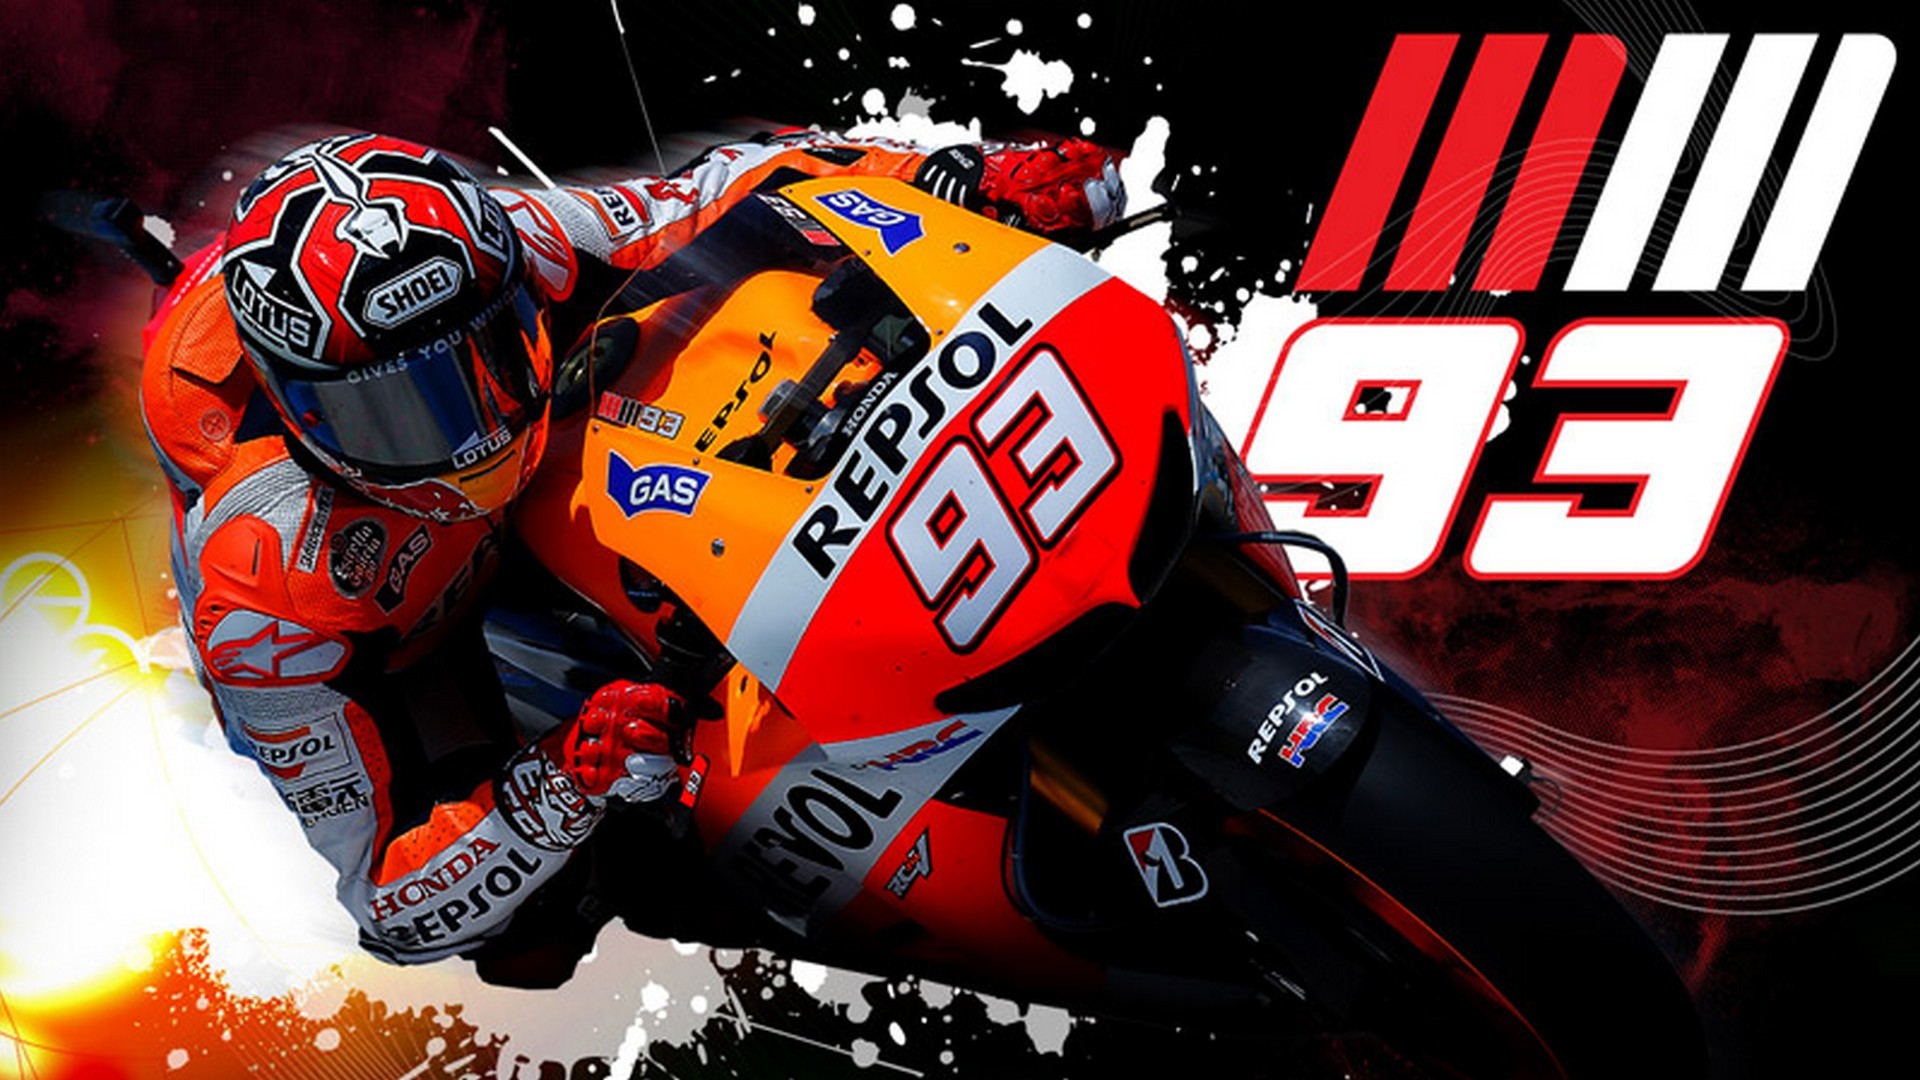 marquez motogp wallpaper,grand prix motorcycle racing,motorcycle racer,helmet,superbike racing,motorcycle helmet